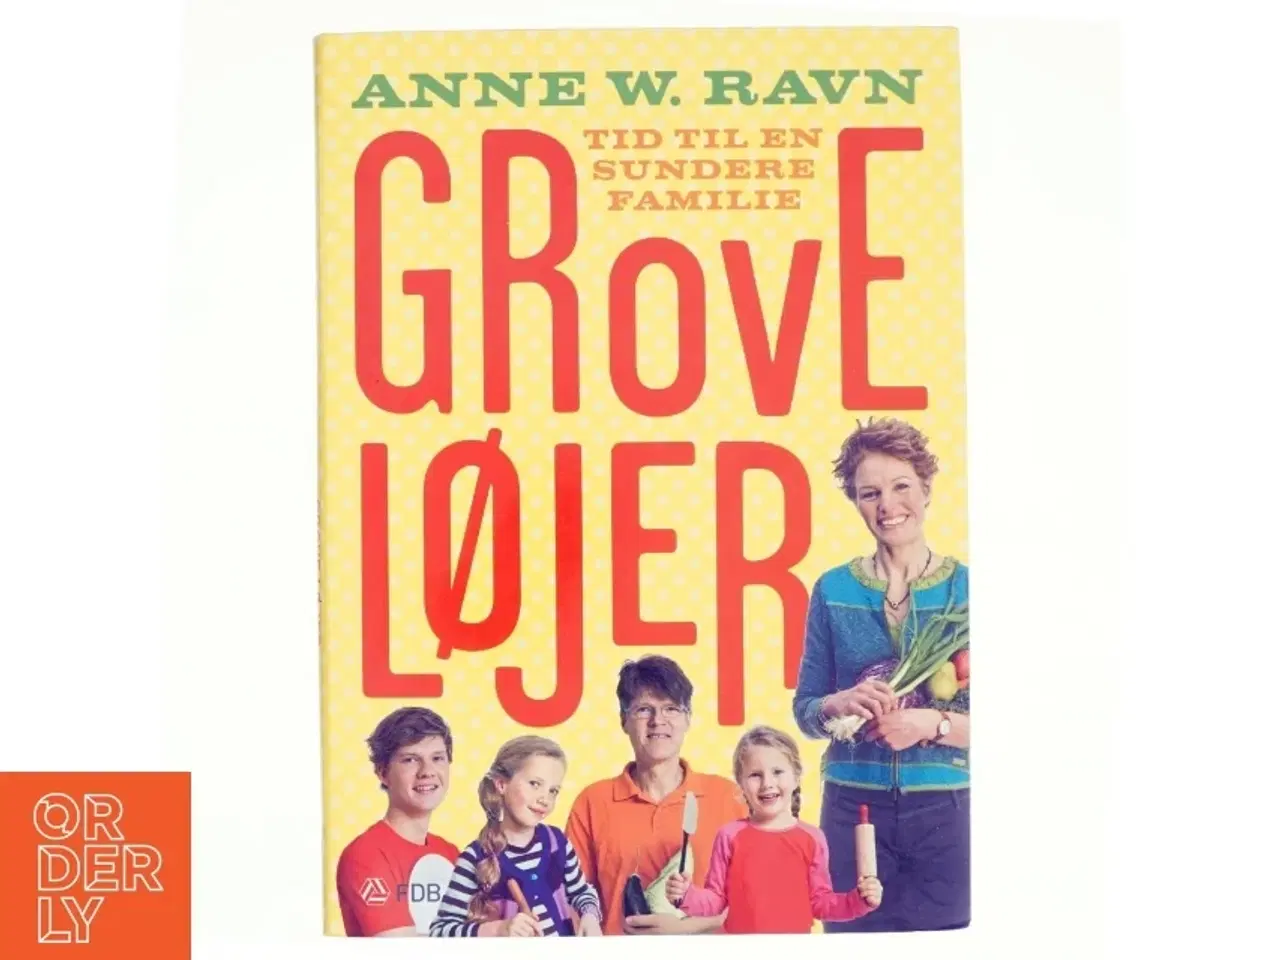 Billede 1 - Grove løjer : tid til en sundere familie af Anne W. Ravn (Bog)